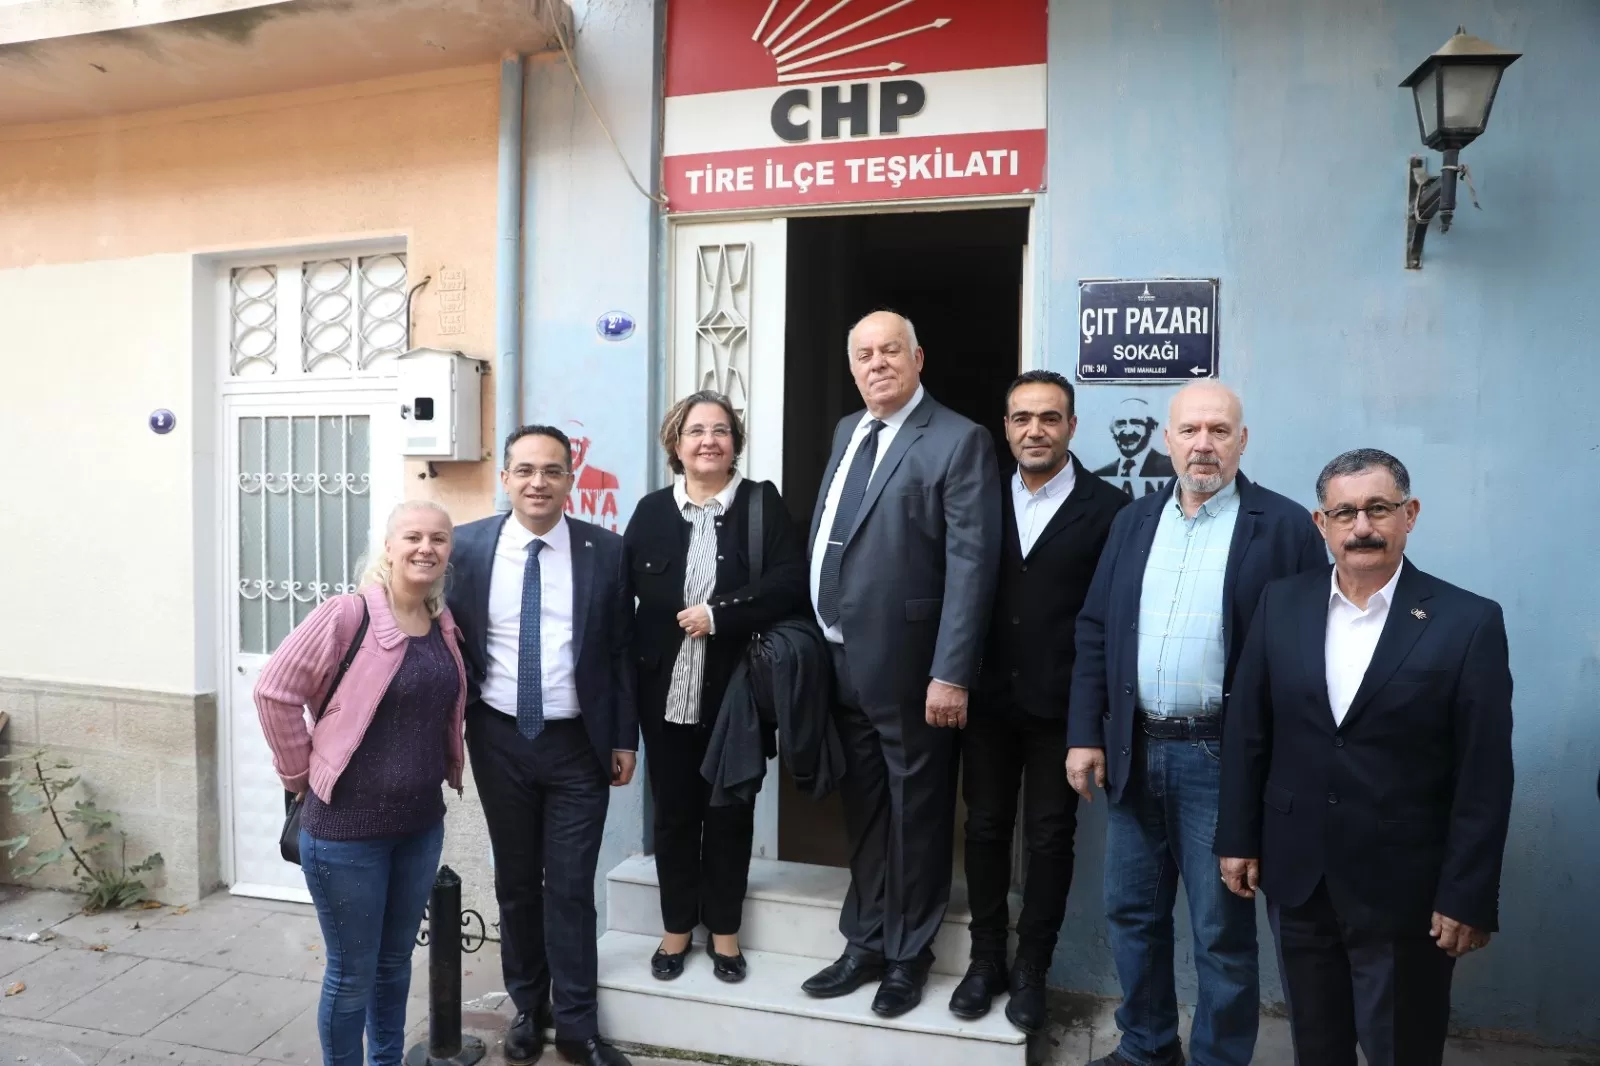 CHP İzmir Büyükşehir Belediye Başkan Aday Adayı Olgun Atila, Tire'de yoğun bir program gerçekleştirdi. 